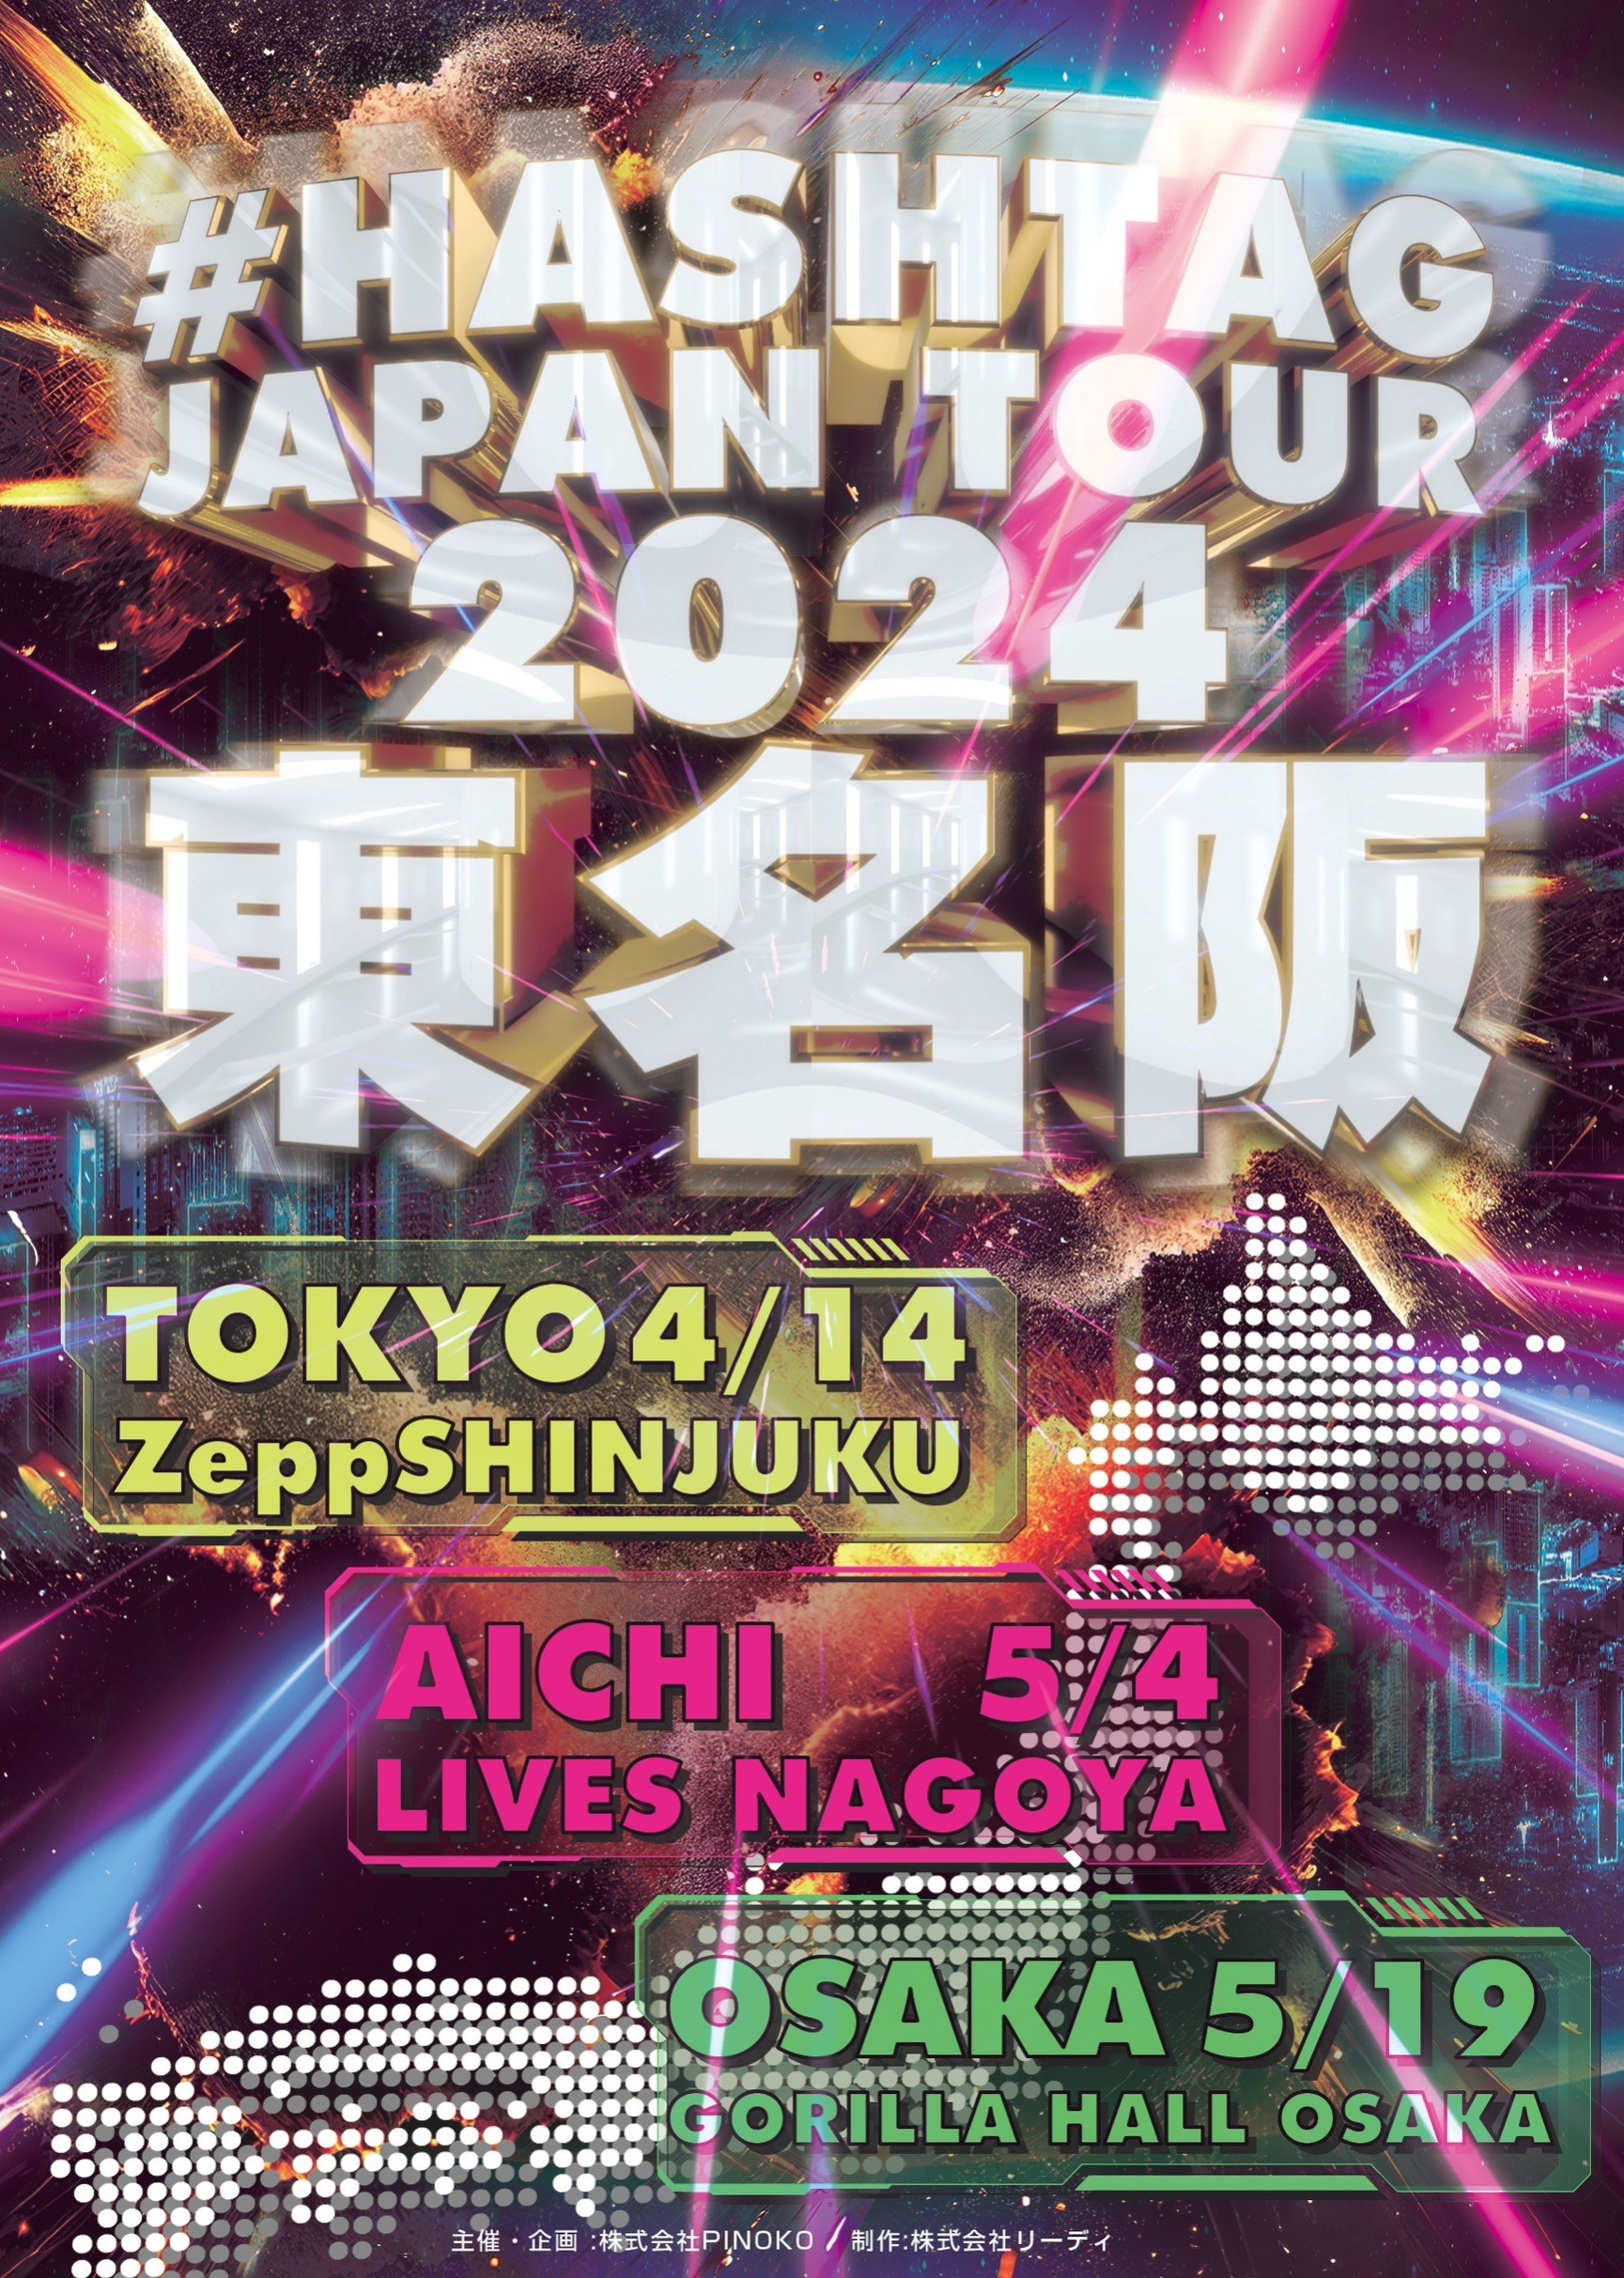 HASHTAG JAPAN TOUR 2024 東名阪